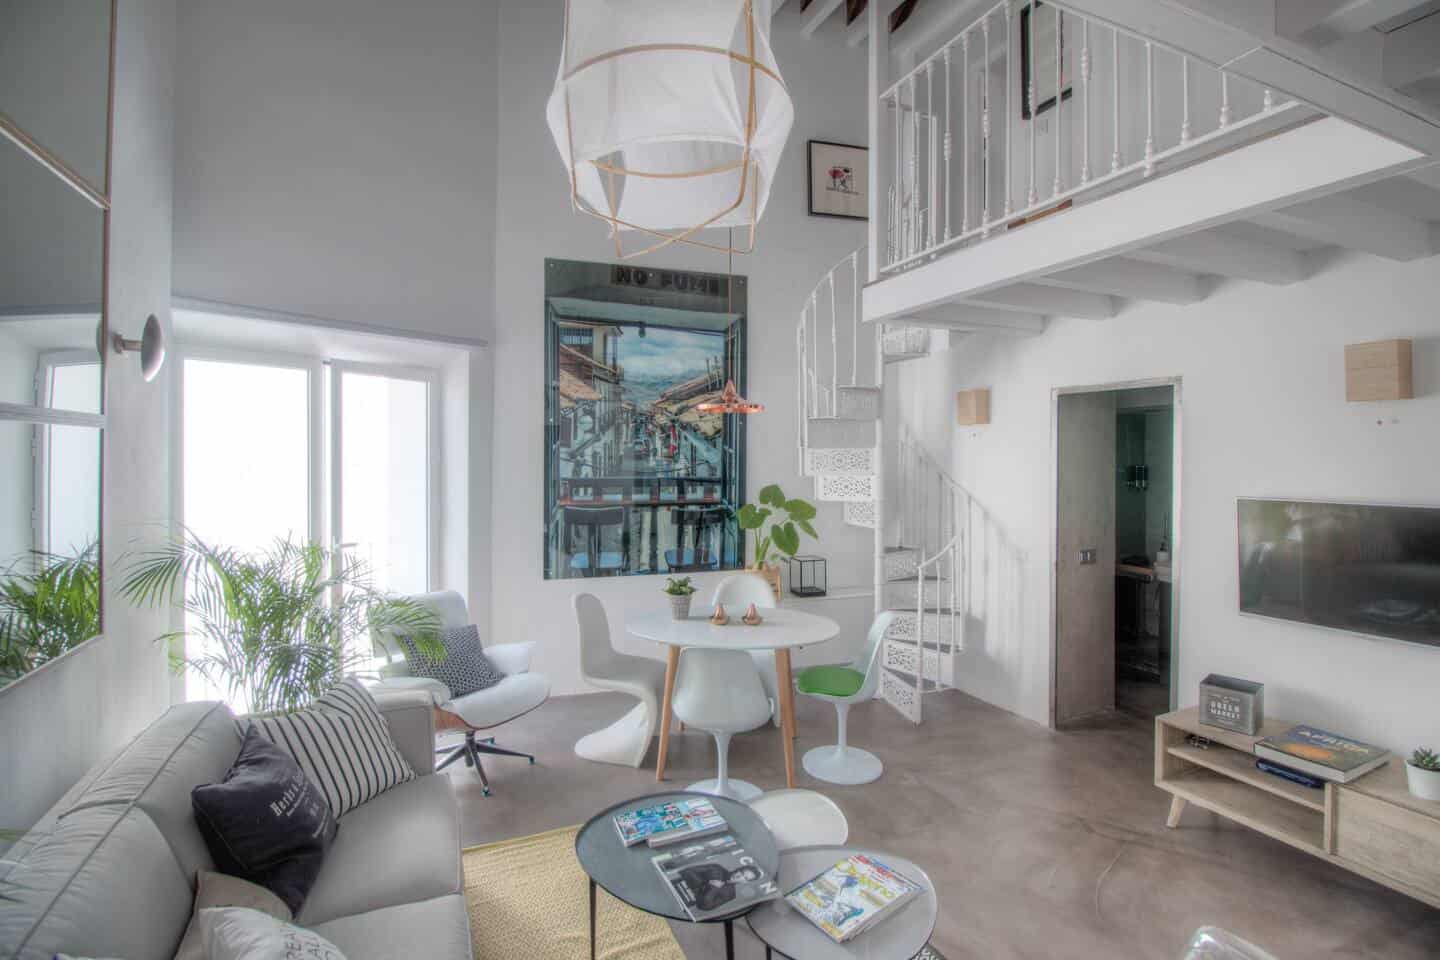 Image of Airbnb rental in Córdoba, Spain